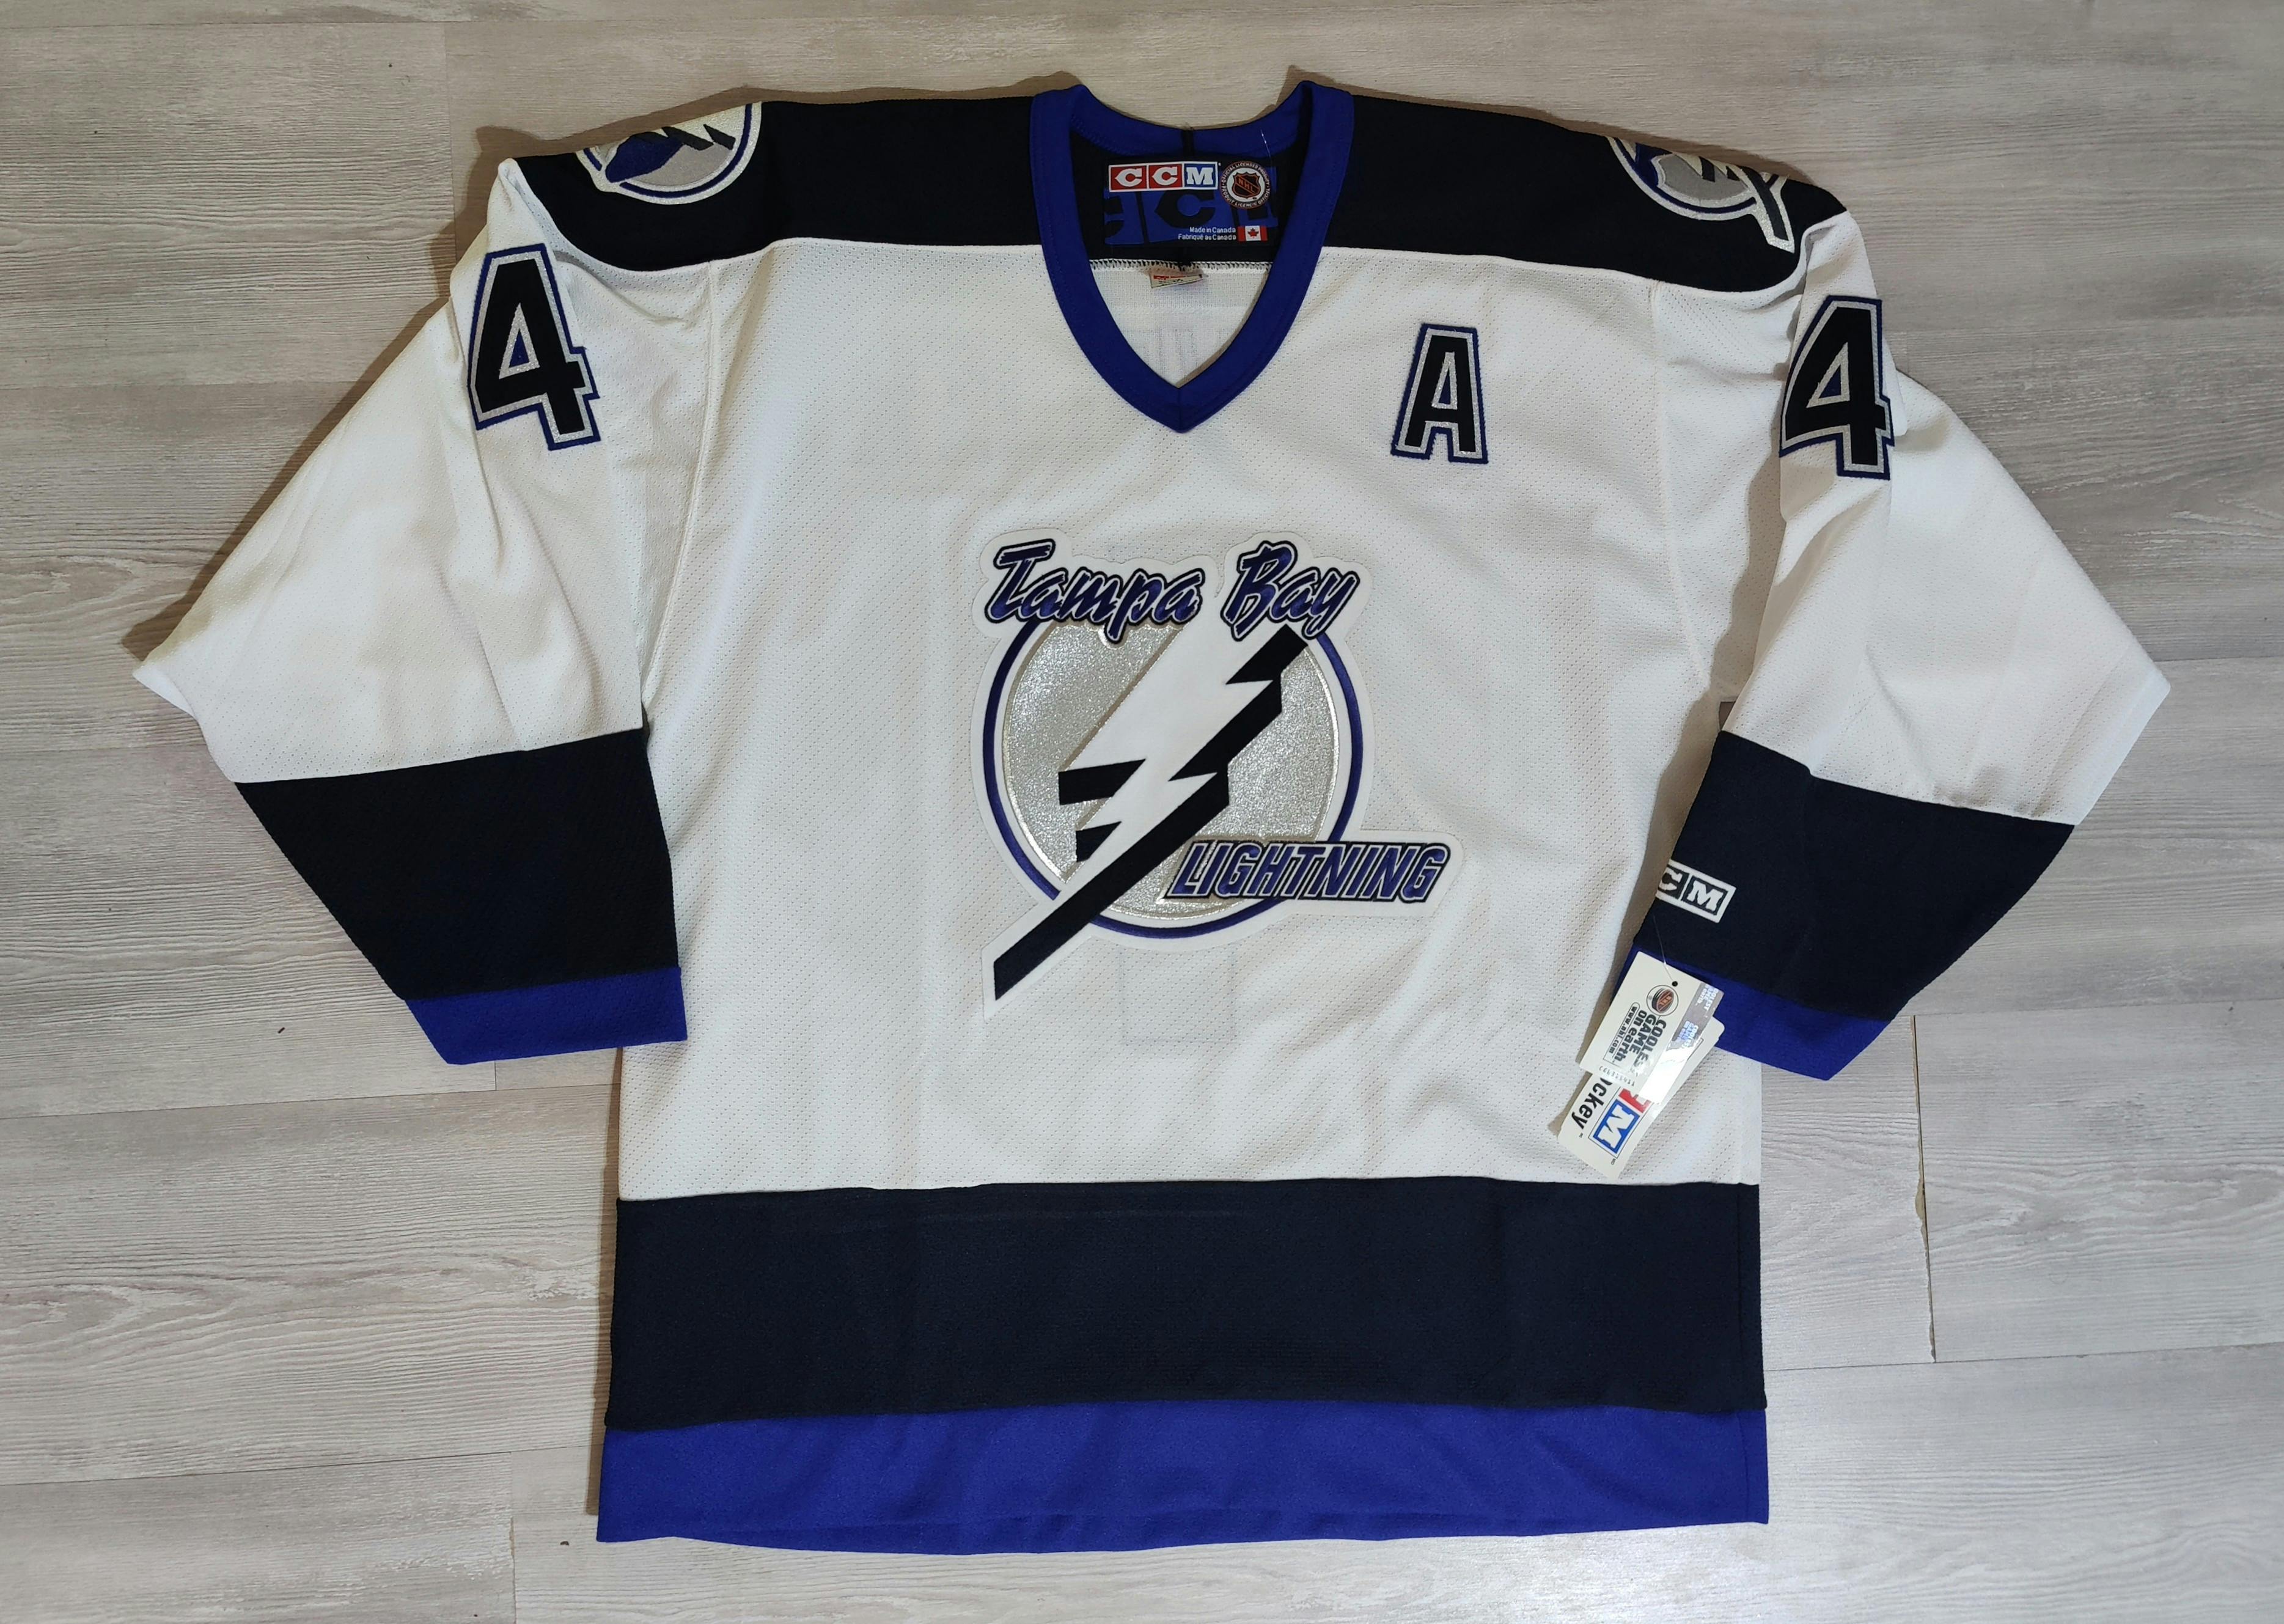 2008 Vinny Lecavalier Tampa Bay Lightning Reebok NHL Jersey Size Medium –  Rare VNTG